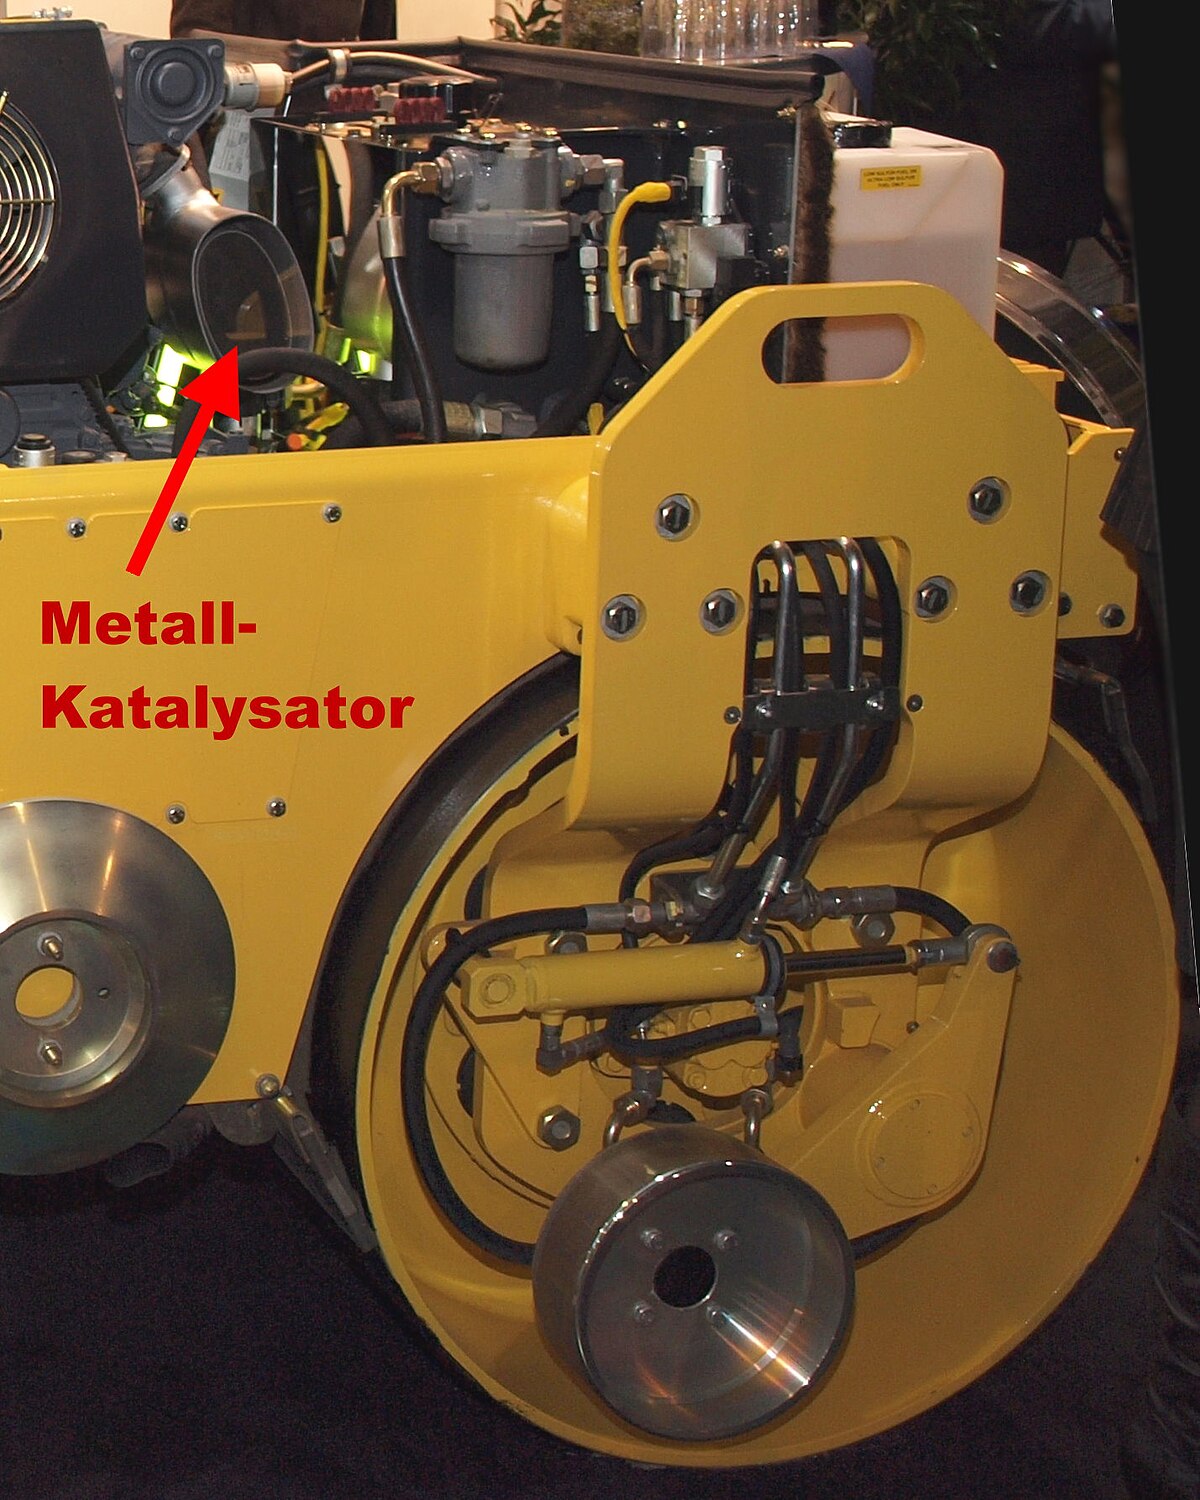 File:Metall-Katalysator Baumaschine.jpg - Wikimedia Commons